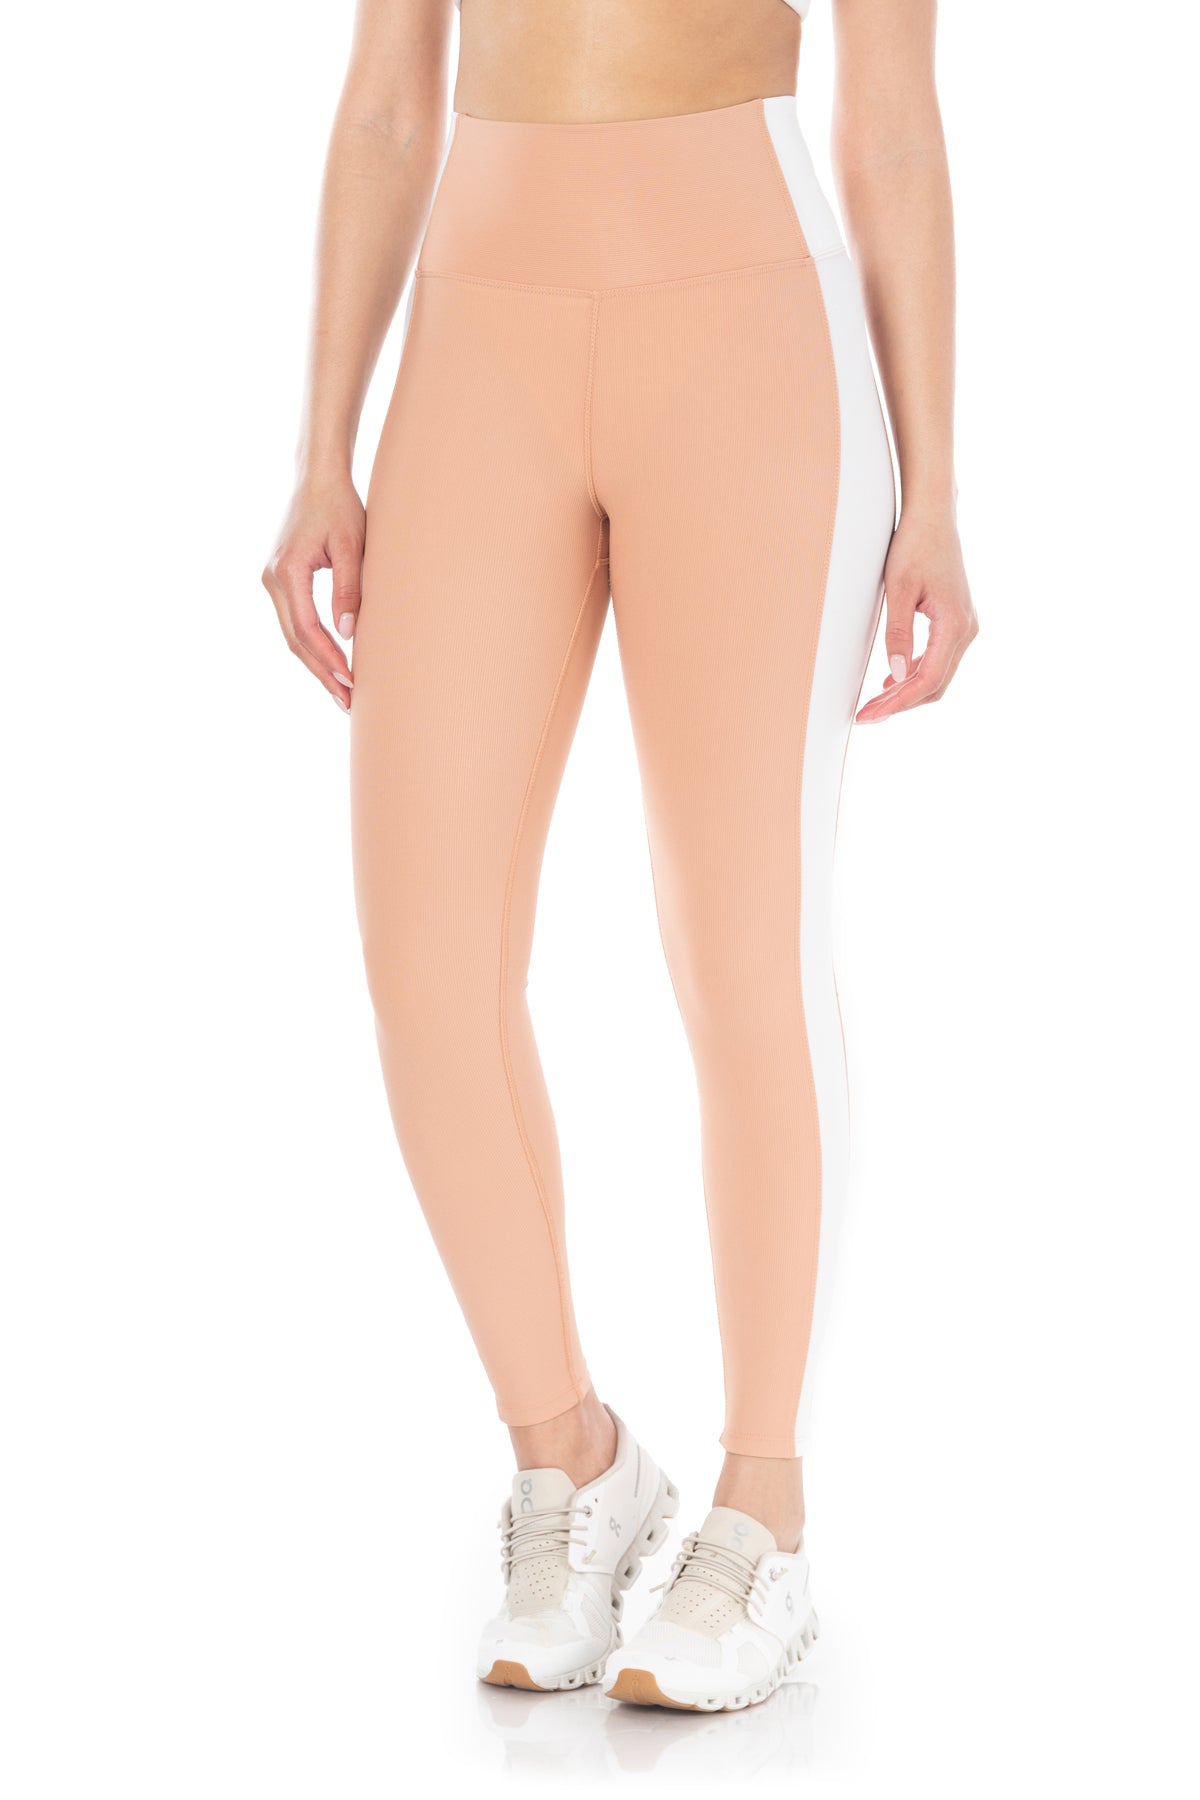 SIERRA LEGGINGS - ribbed beige leggings